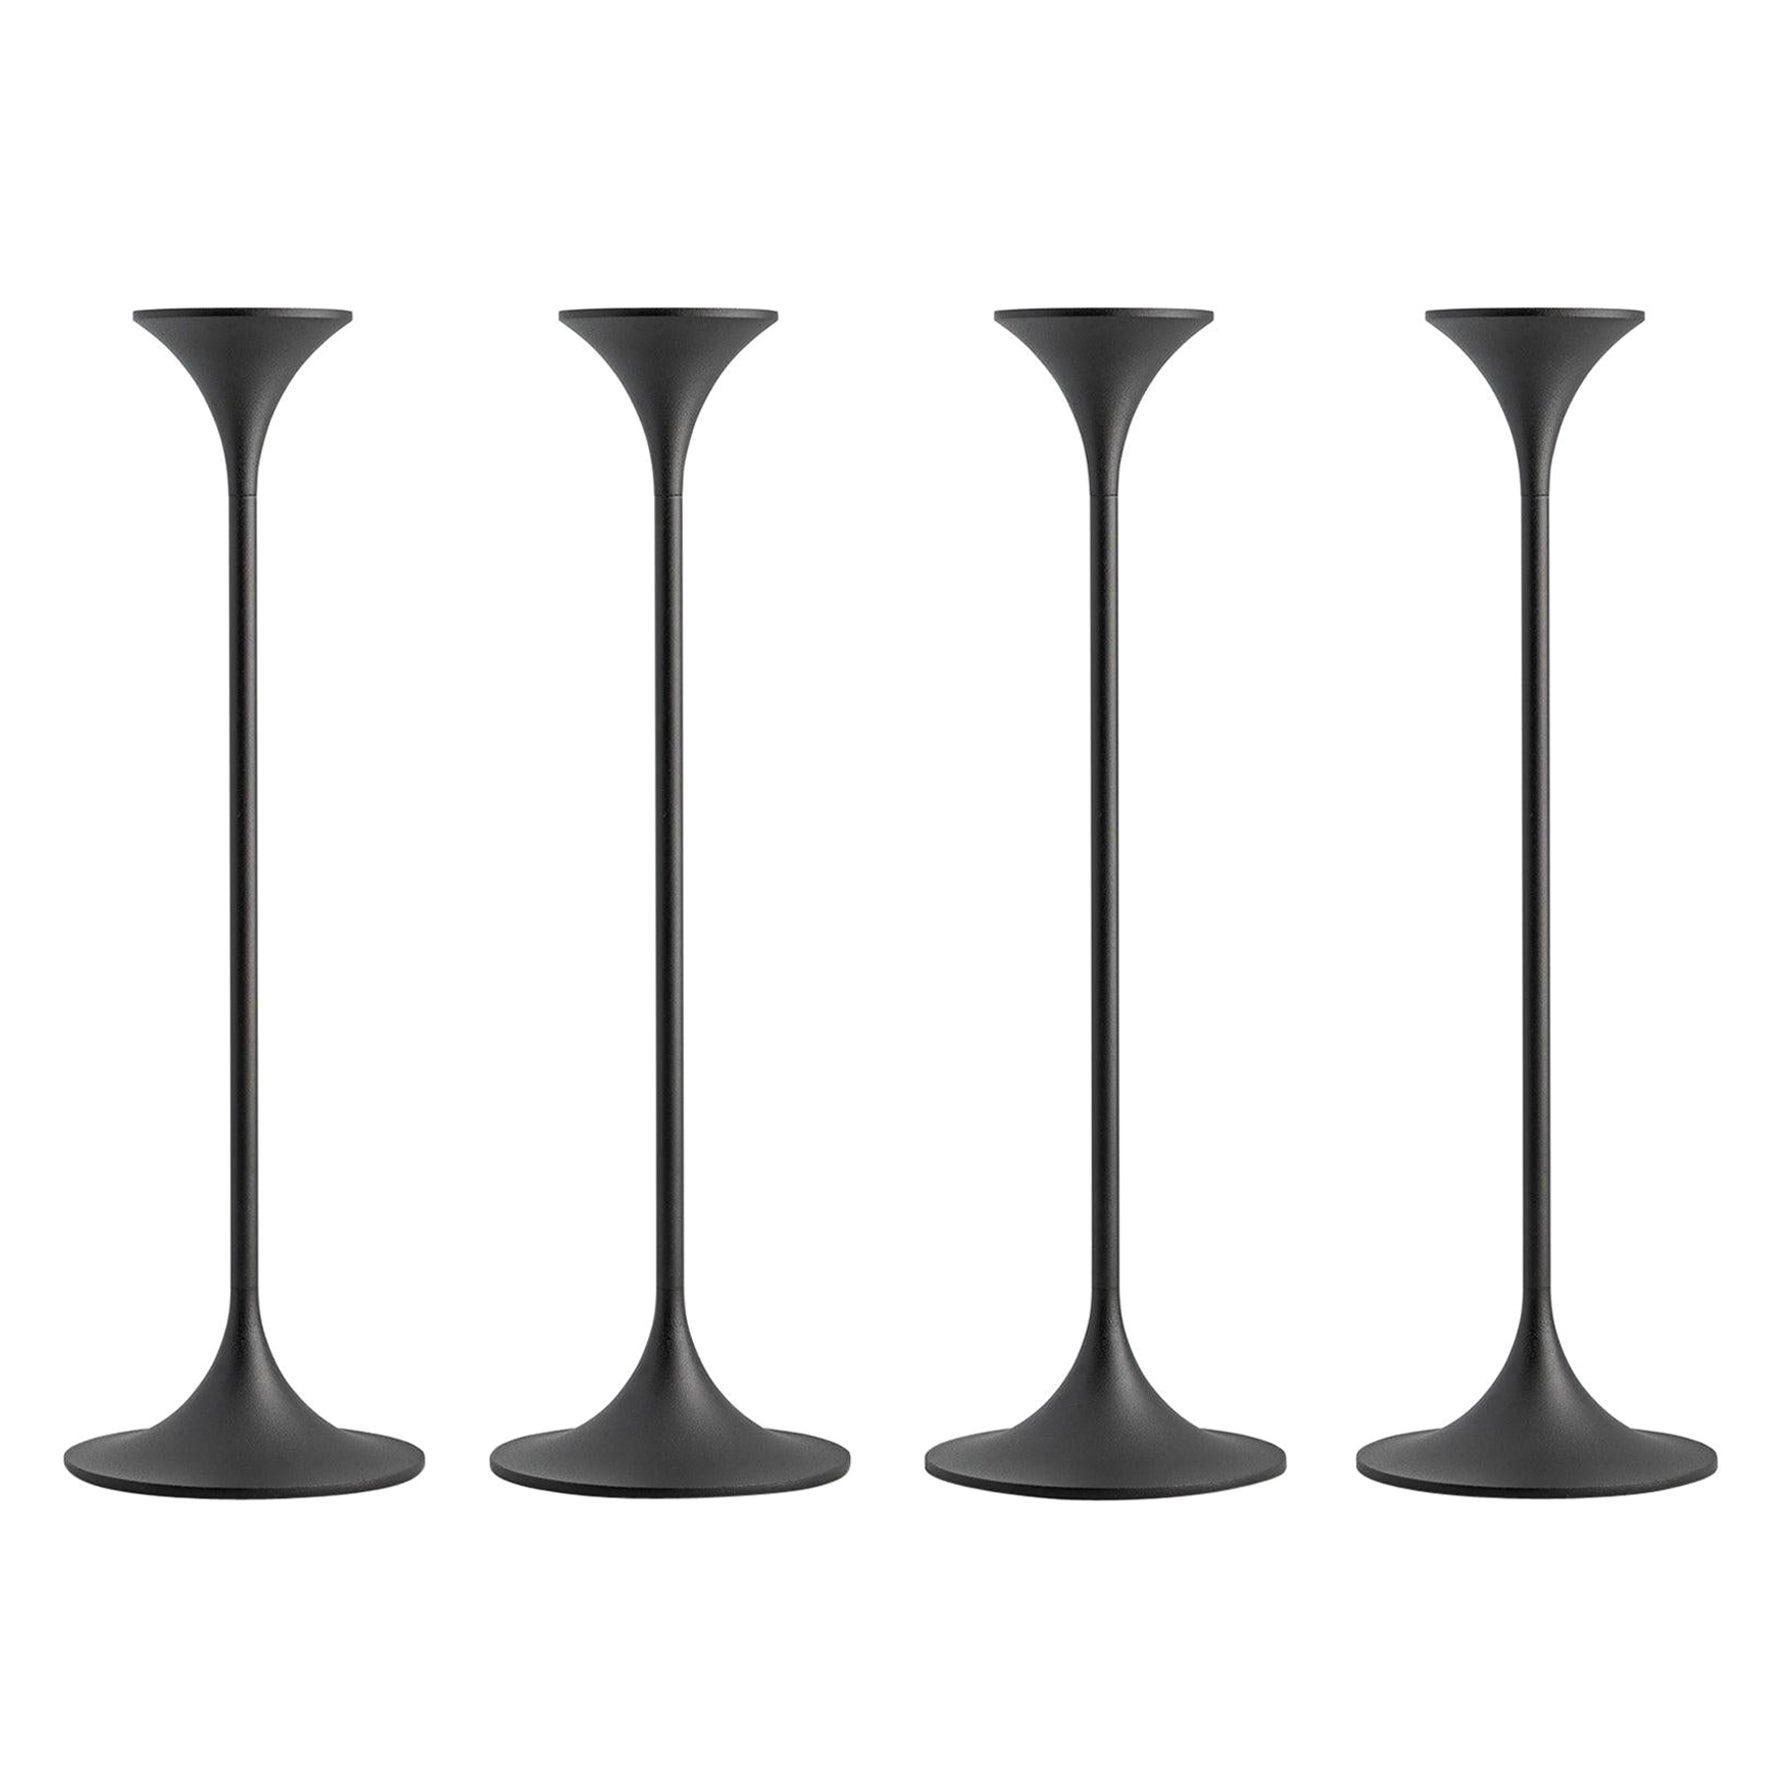 Ensemble de quatre chandeliers "Jazz" de Max Brüel, acier avec revêtement en poudre noire